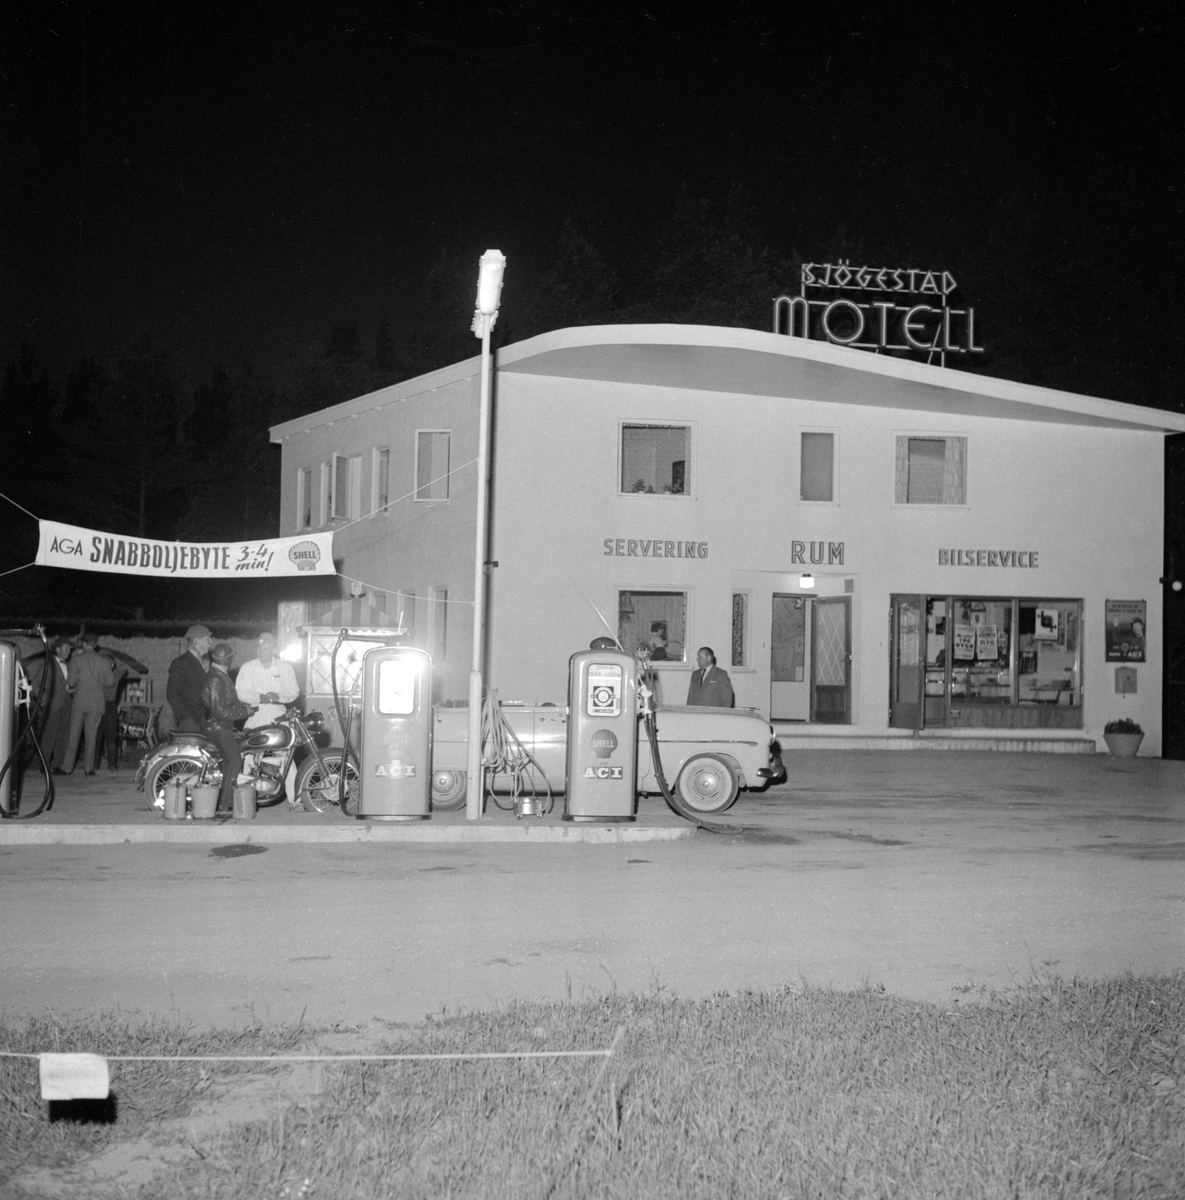 Sjögestad motell en sommarnatt 1956. Arrangemanget kring bilden är oklar men den visar i alla avseenden miljön före motellets utbyggnad under 1960-talet. Denna första del placerades invid dåvarande Riksväg 1 och stod klar 1954.